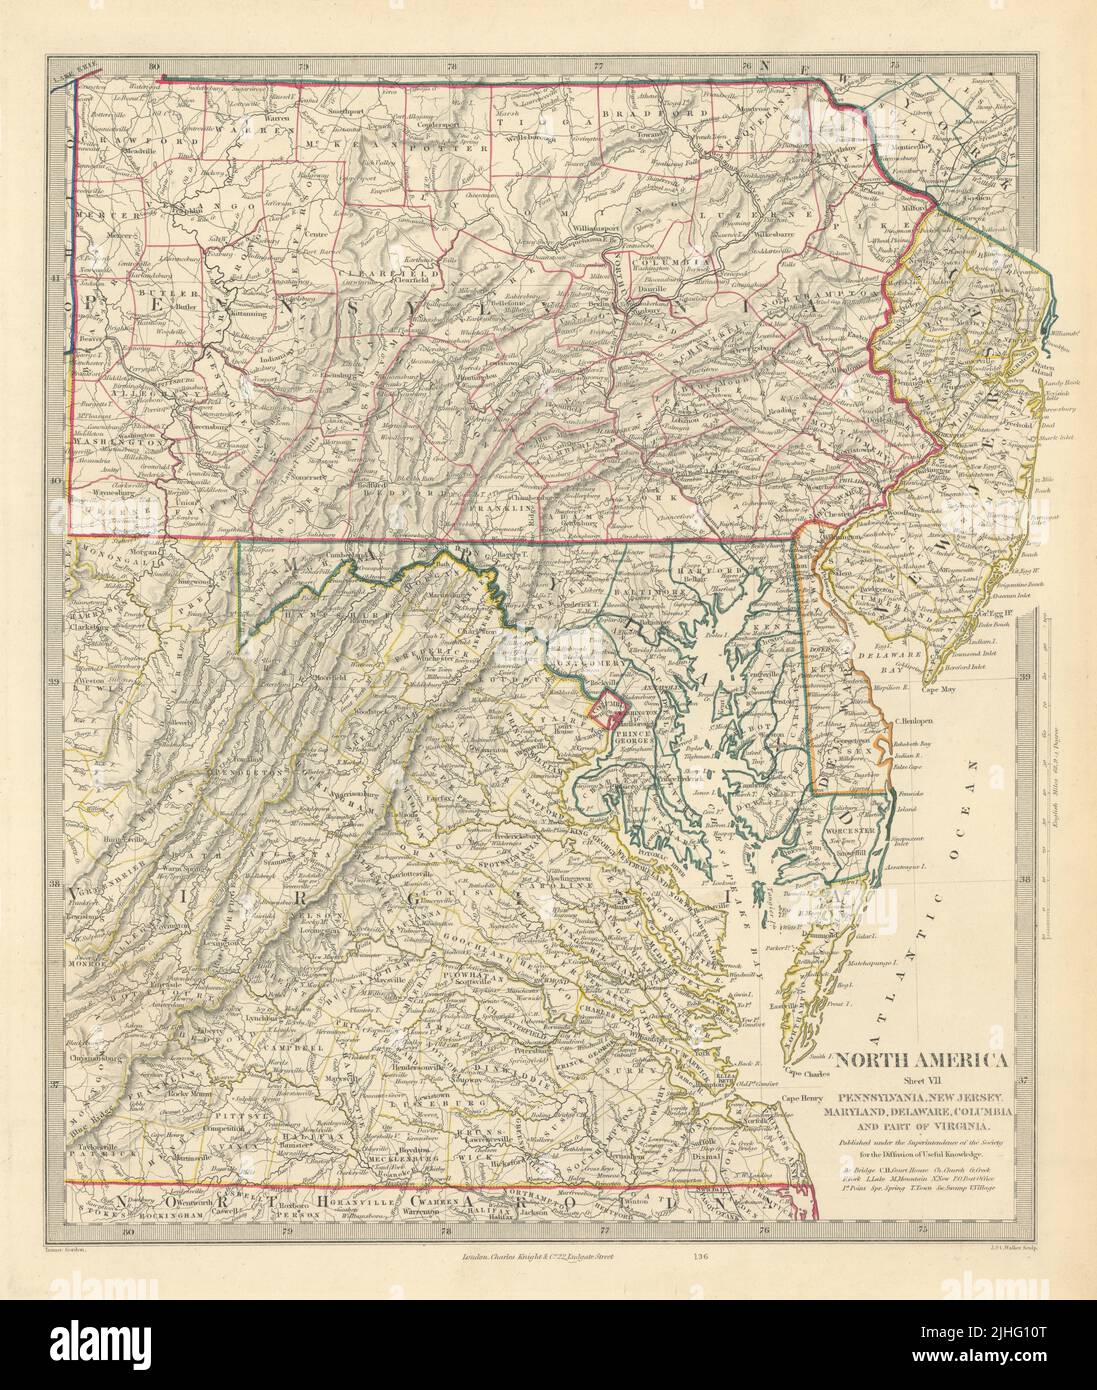 ÉTATS-UNIS. Pennsylvanie New Jersey Maryland Delaware DC Virginie. Carte SDUK 1851 ancienne Banque D'Images